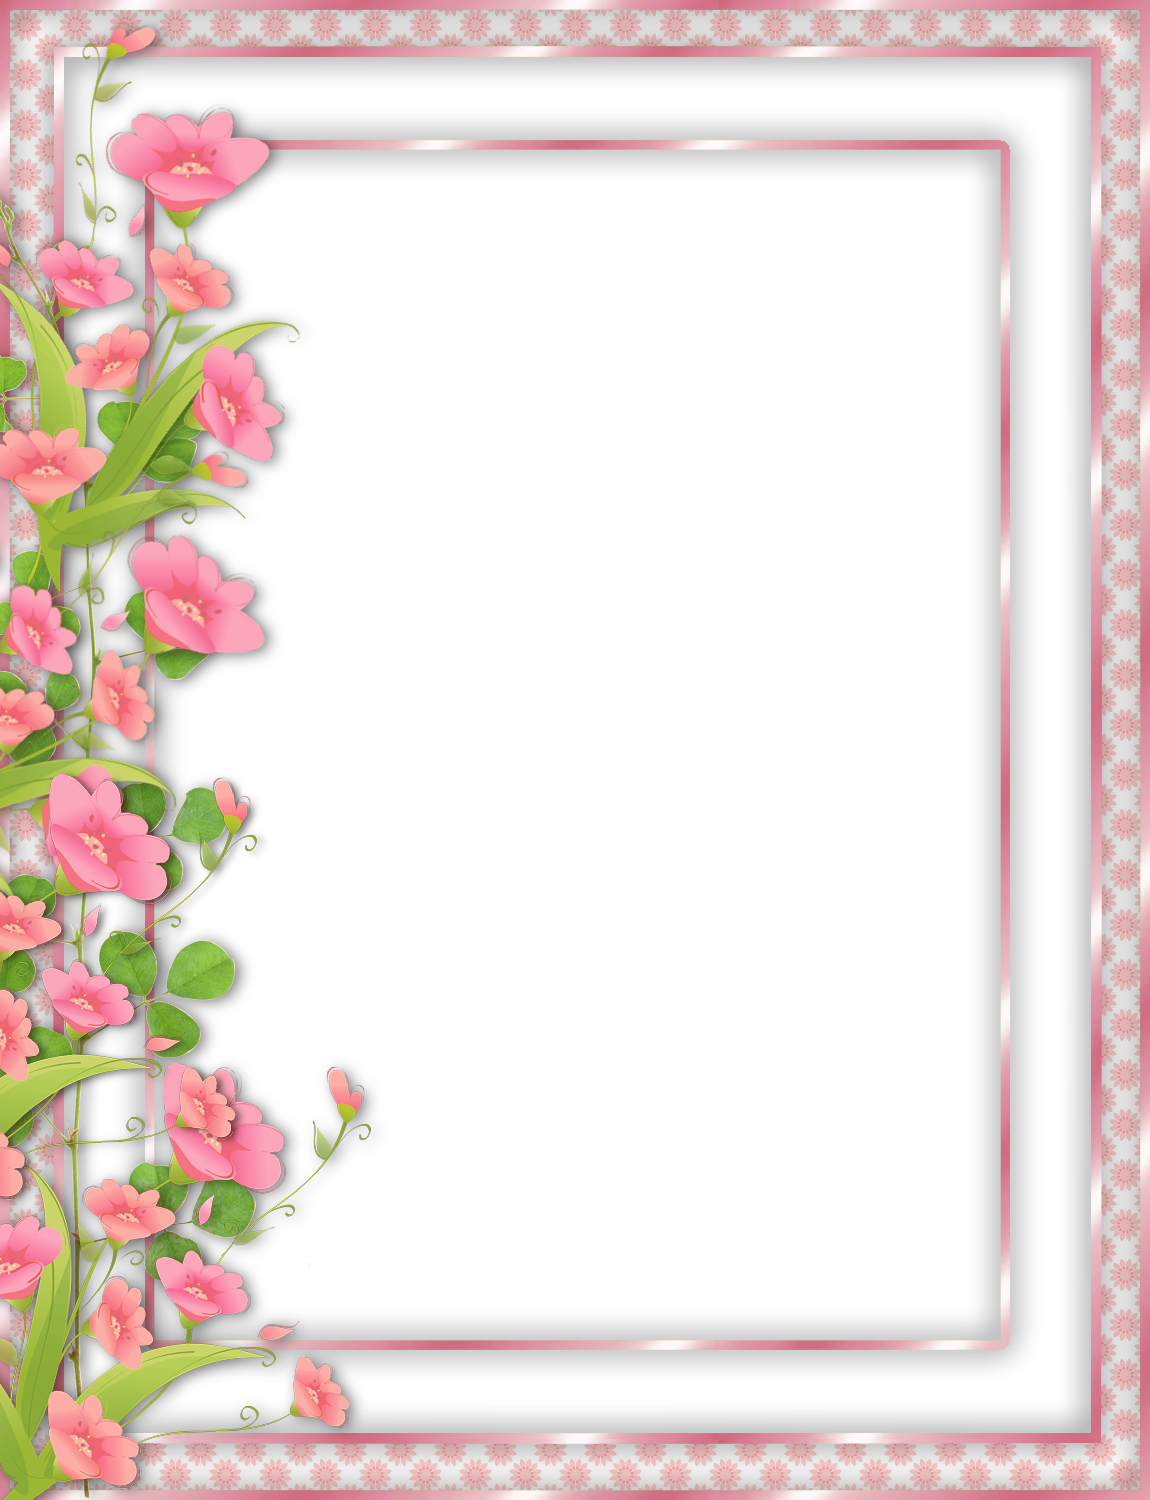 flower frame border design
